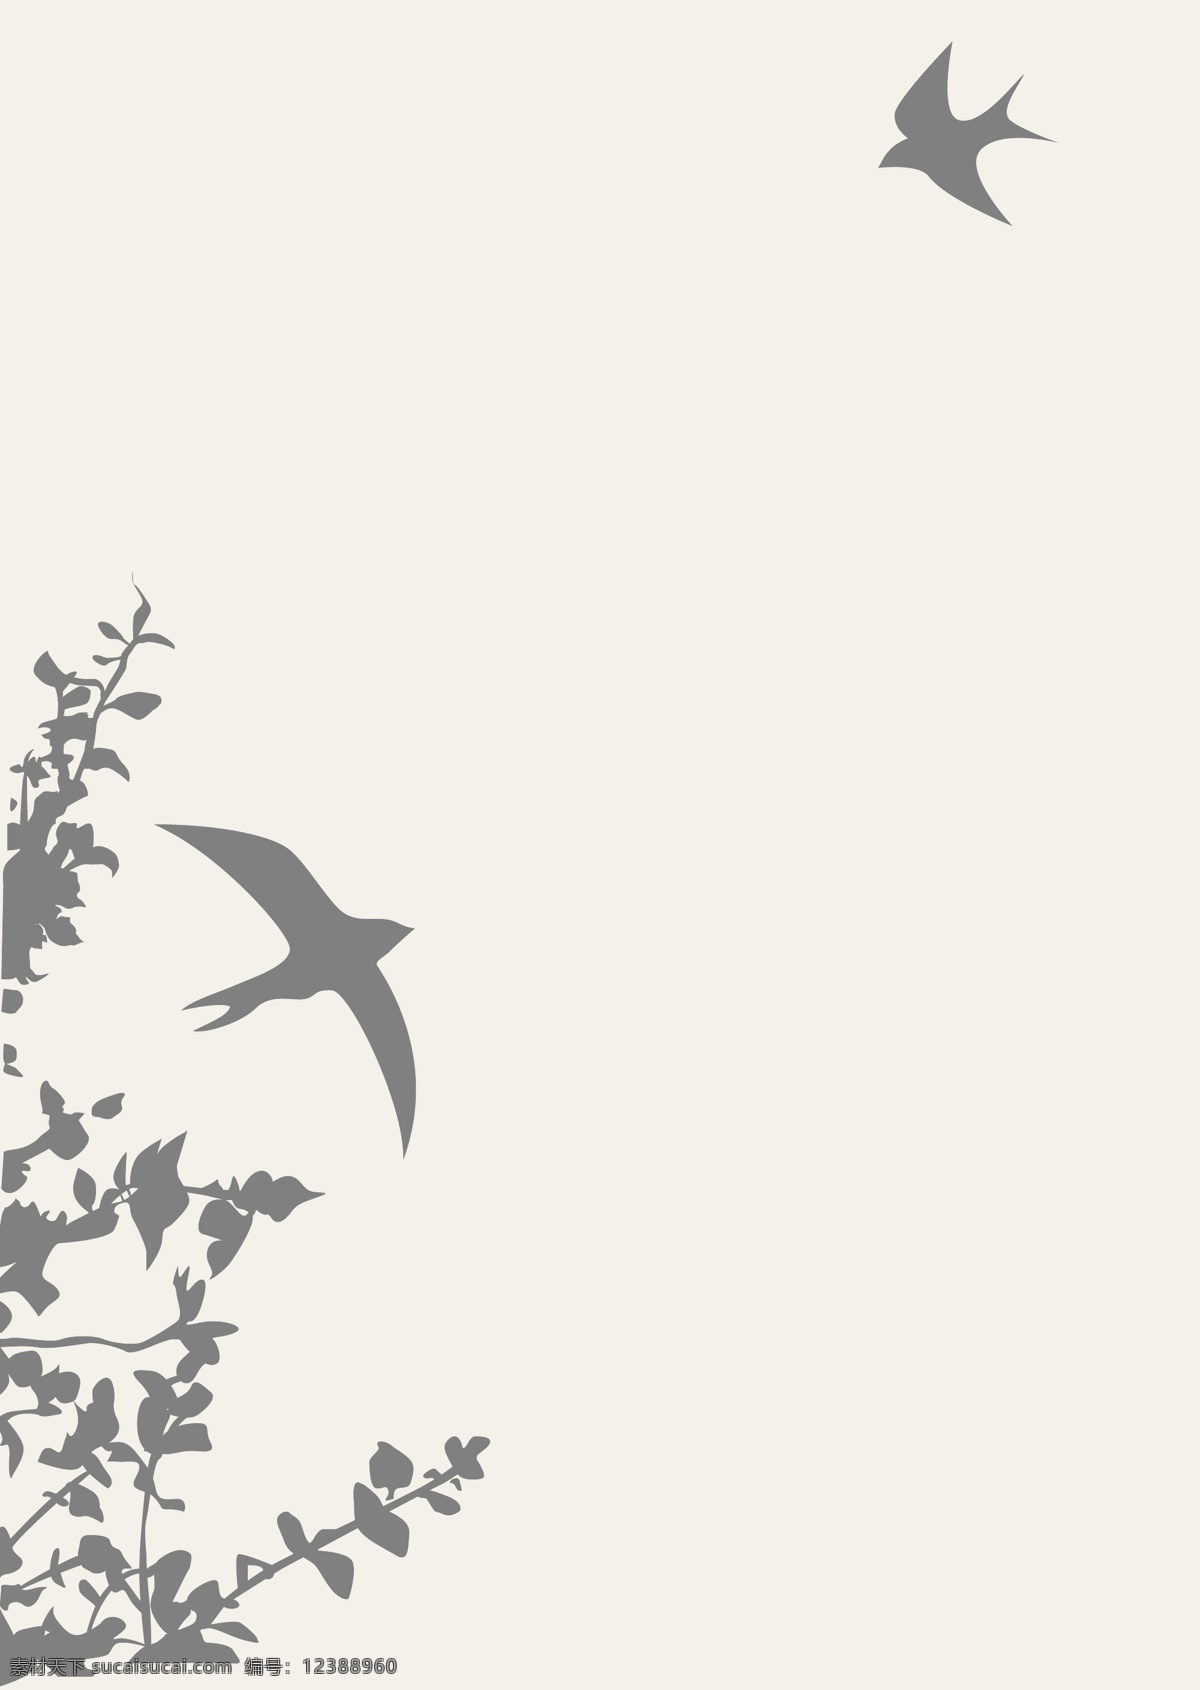 燕子 植物 剪影 鸟类 生物世界 矢量模板下载 小鸟 燕子植物剪影 矢量矢量素材 矢量 psd源文件